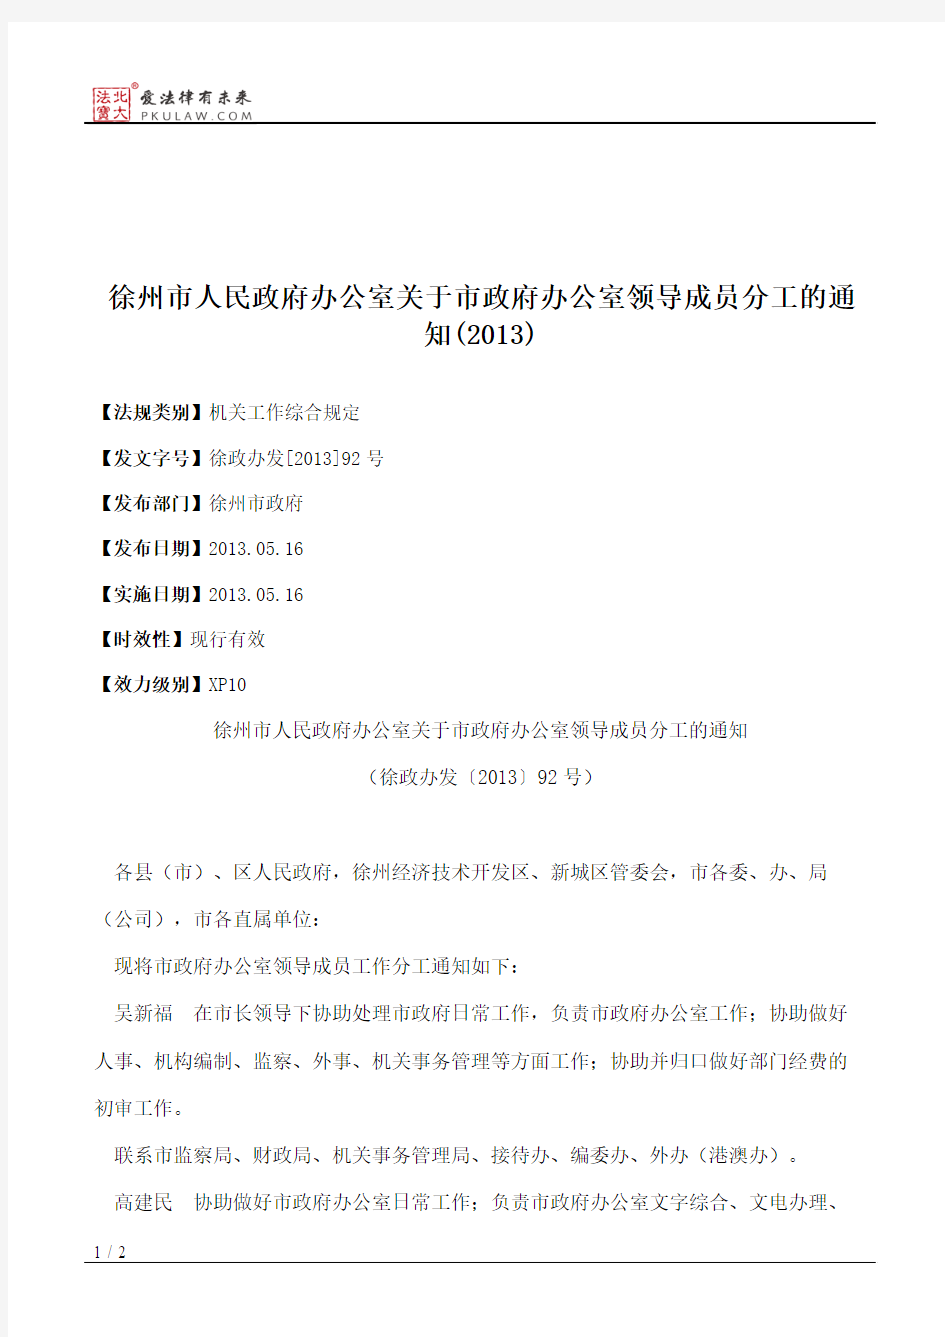 徐州市人民政府办公室关于市政府办公室领导成员分工的通知(2013)